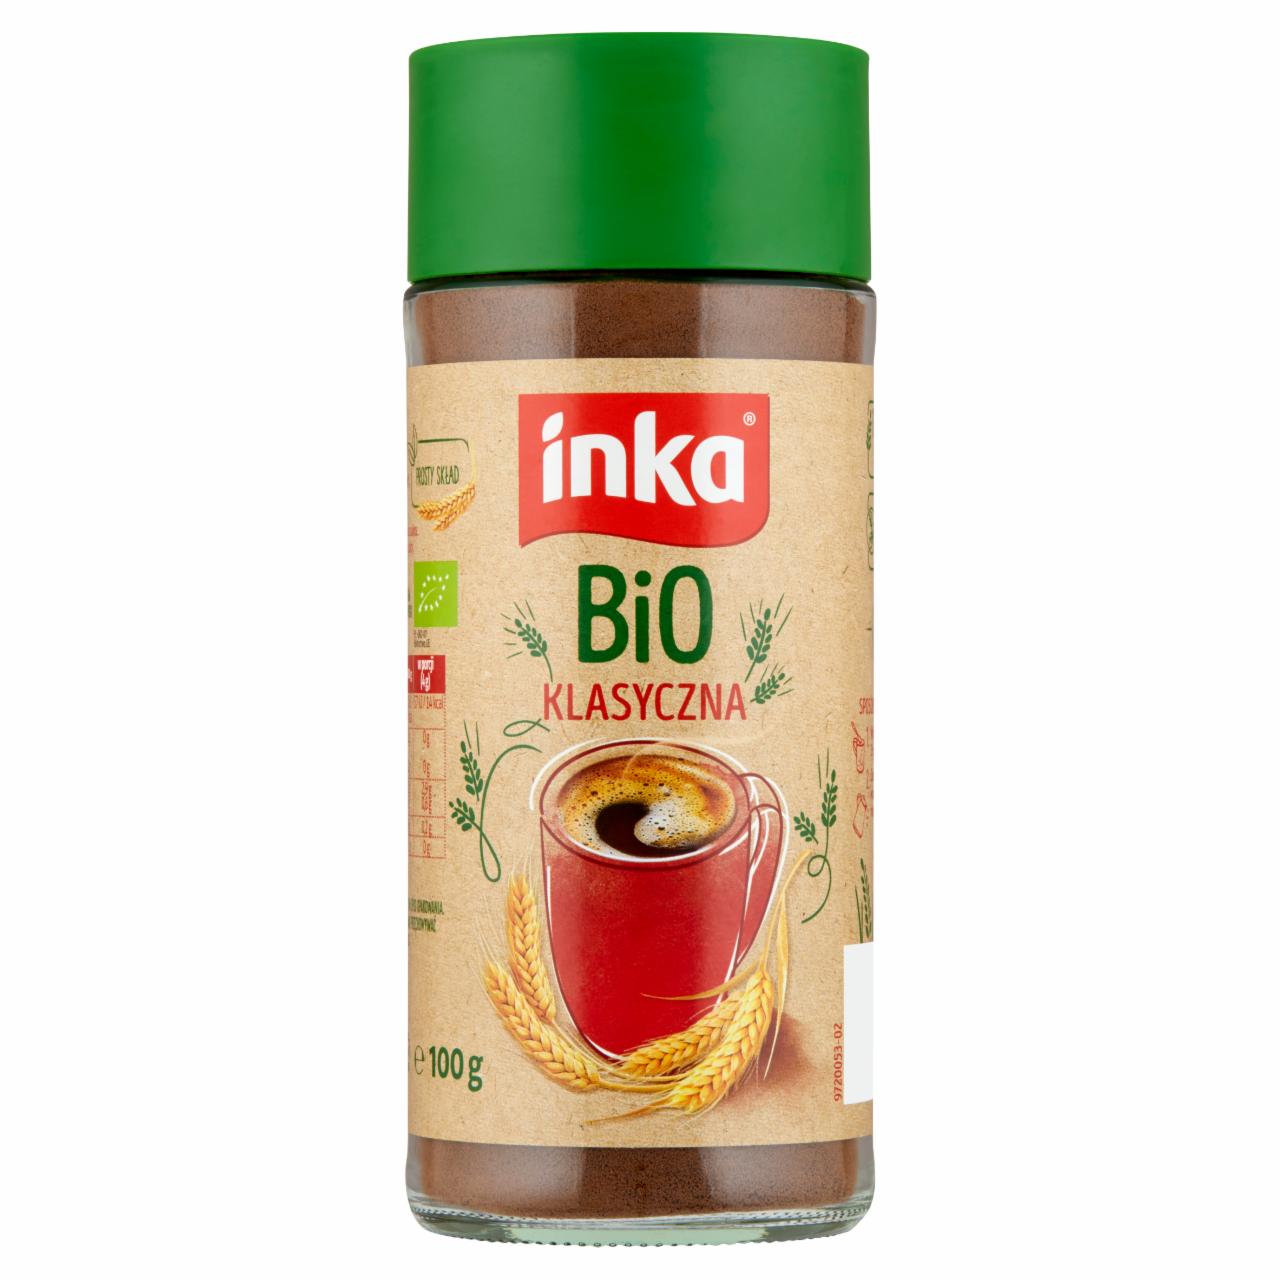 Zdjęcia - Inka Bio Rozpuszczalna kawa zbożowa klasyczna 100 g